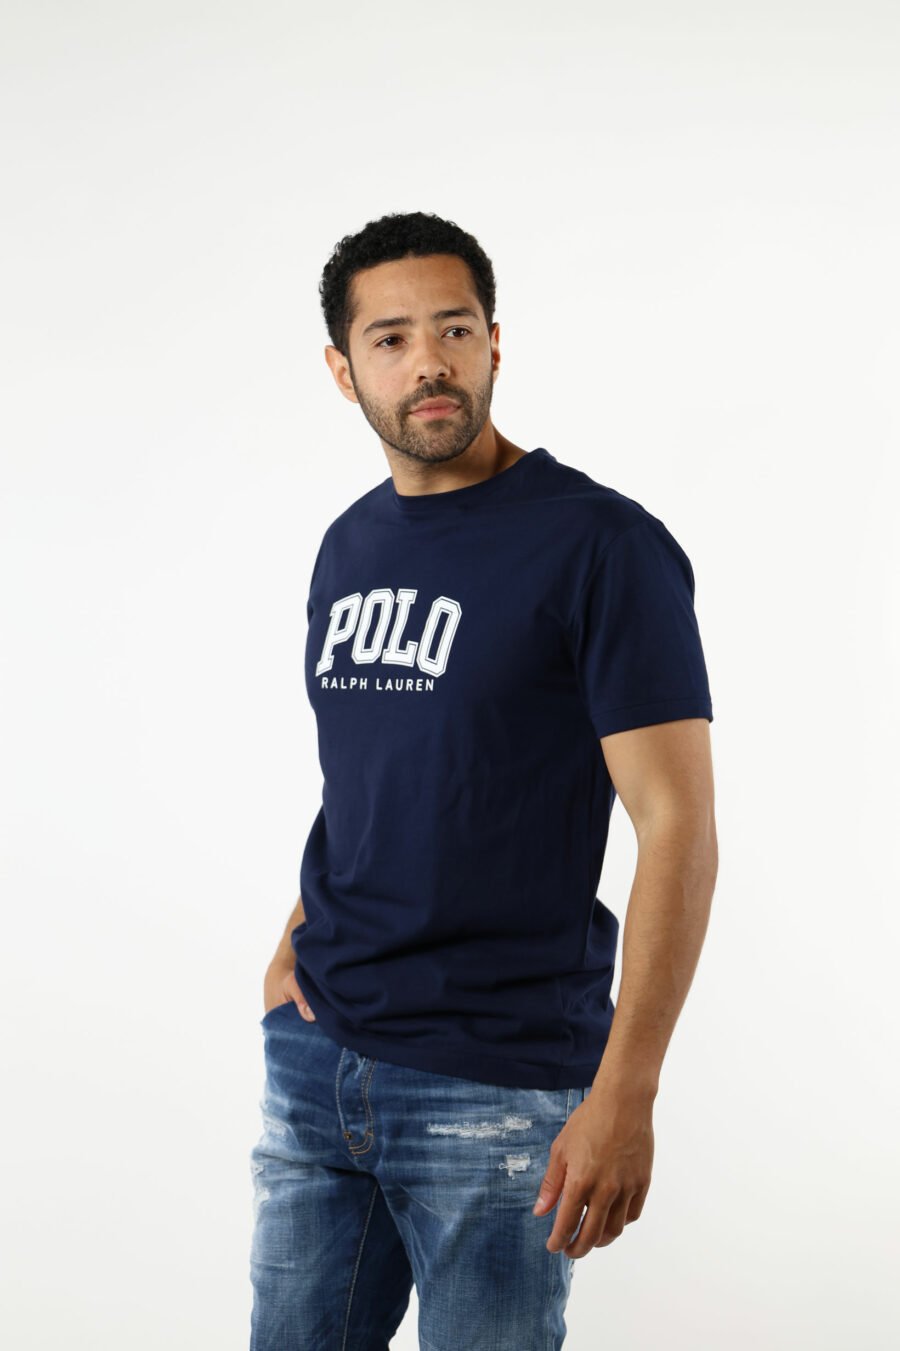 Camiseta azul oscuro con maxilogo "polo" blanco - 111234